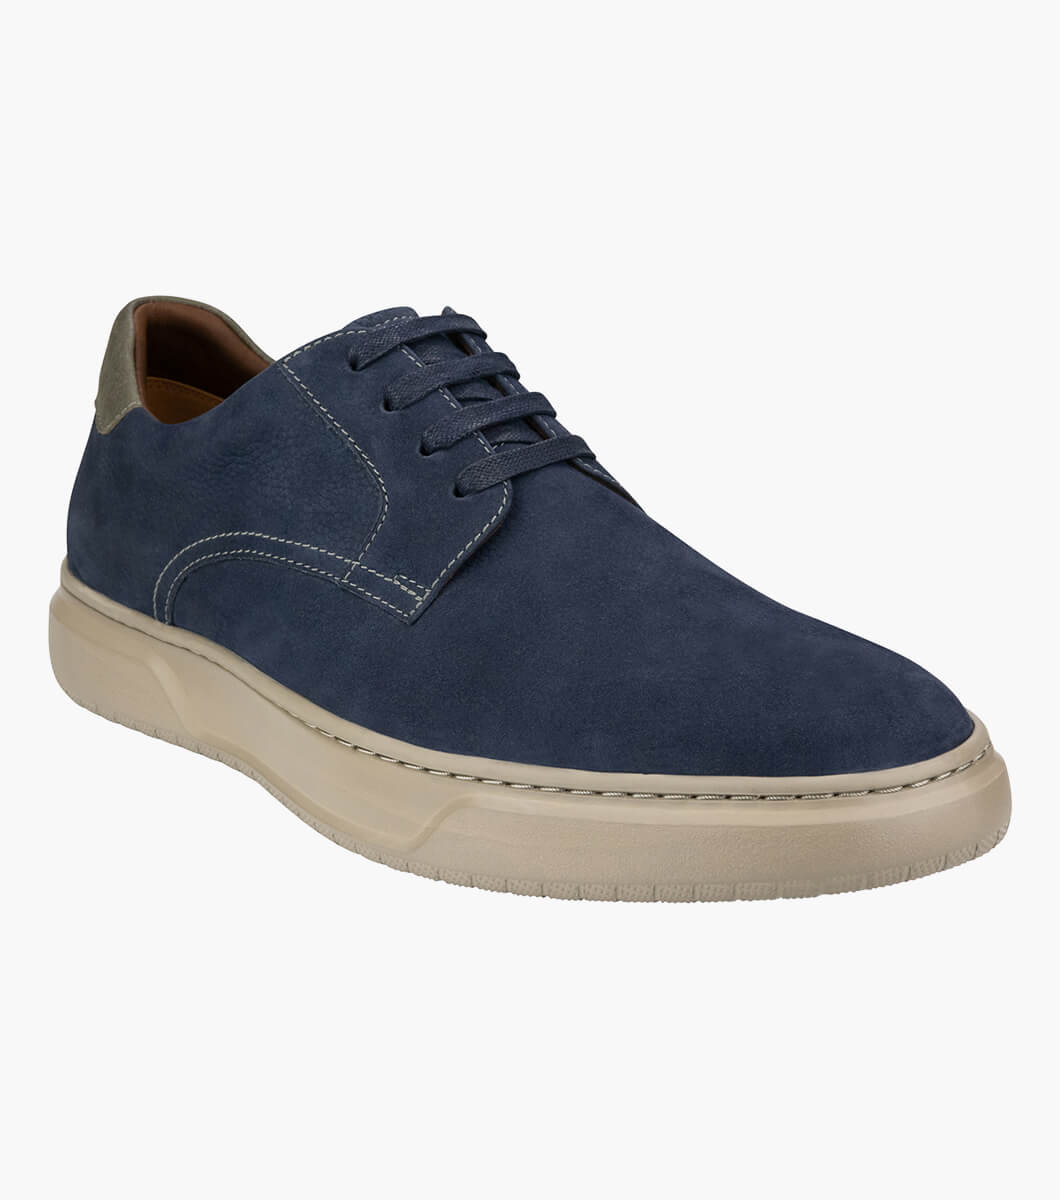 Premier Plain Toe Lace Up Sneaker Men’s Casual Shoes | Florsheim.com